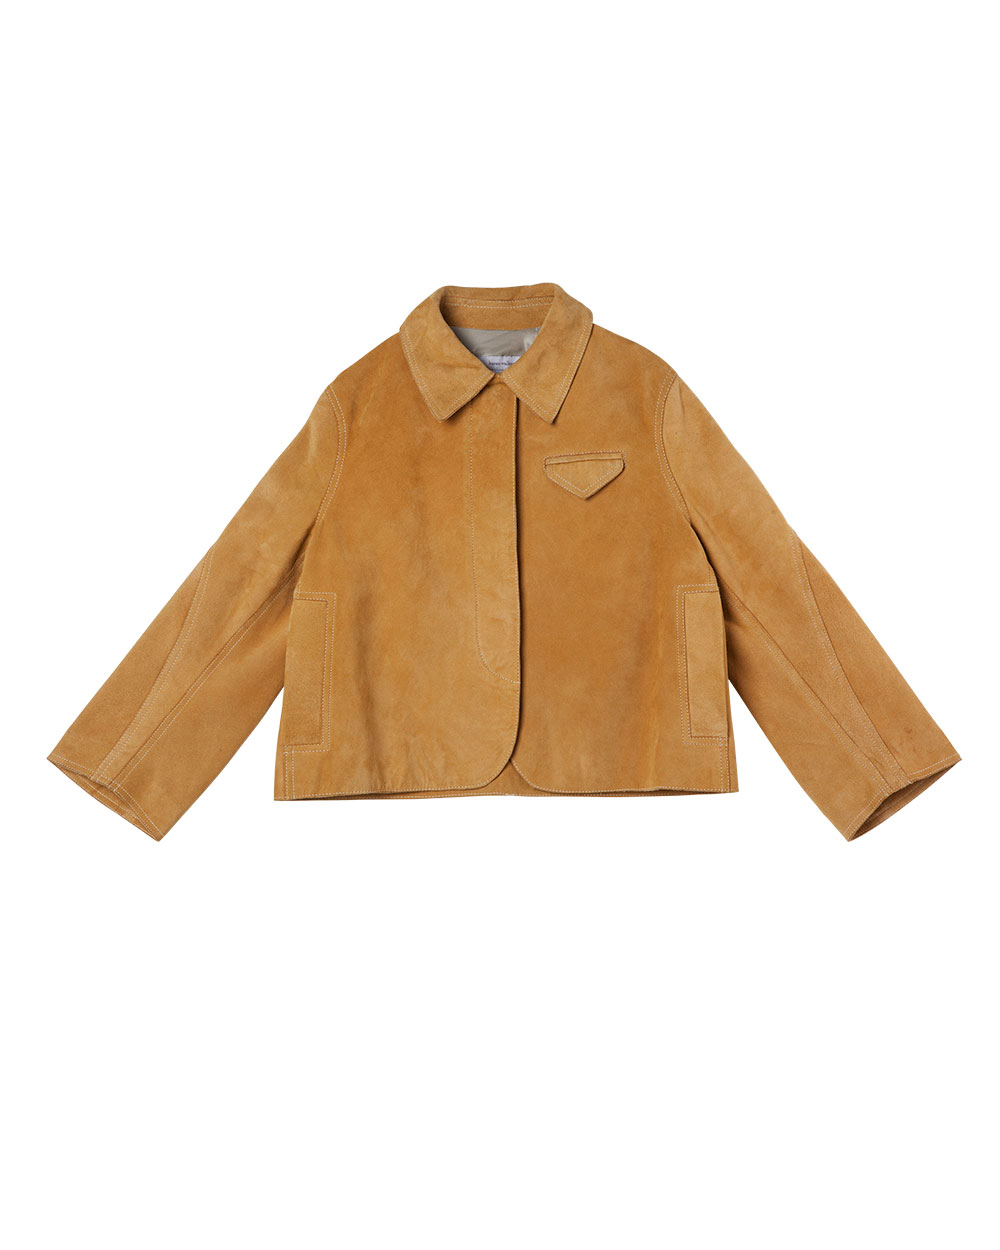 Karen Walker jacket, $2025